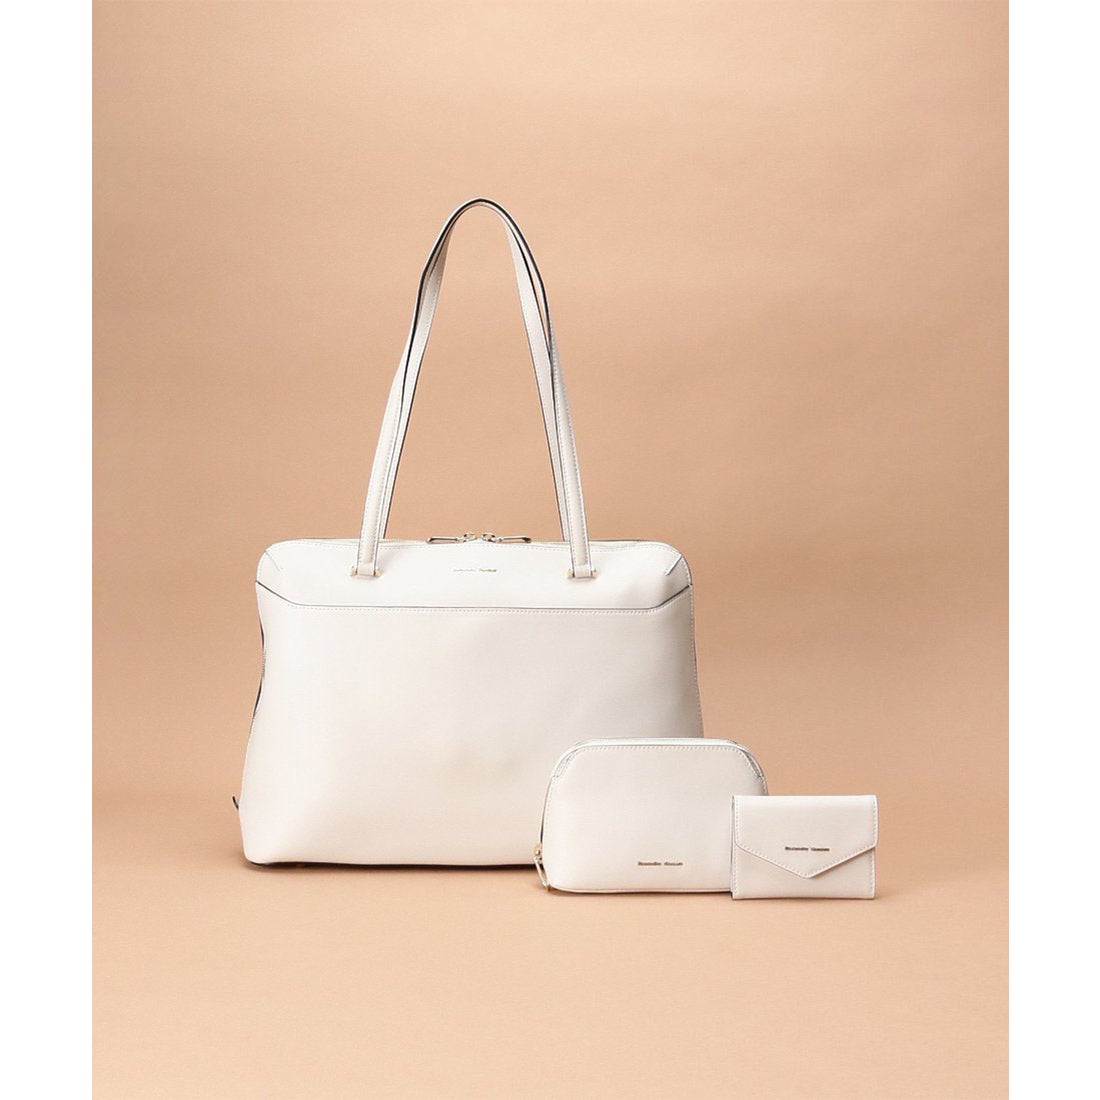 サマンサタバサ Samantha Thavasa Dream bag for レザートートバッグⅡ (オフホワイト)